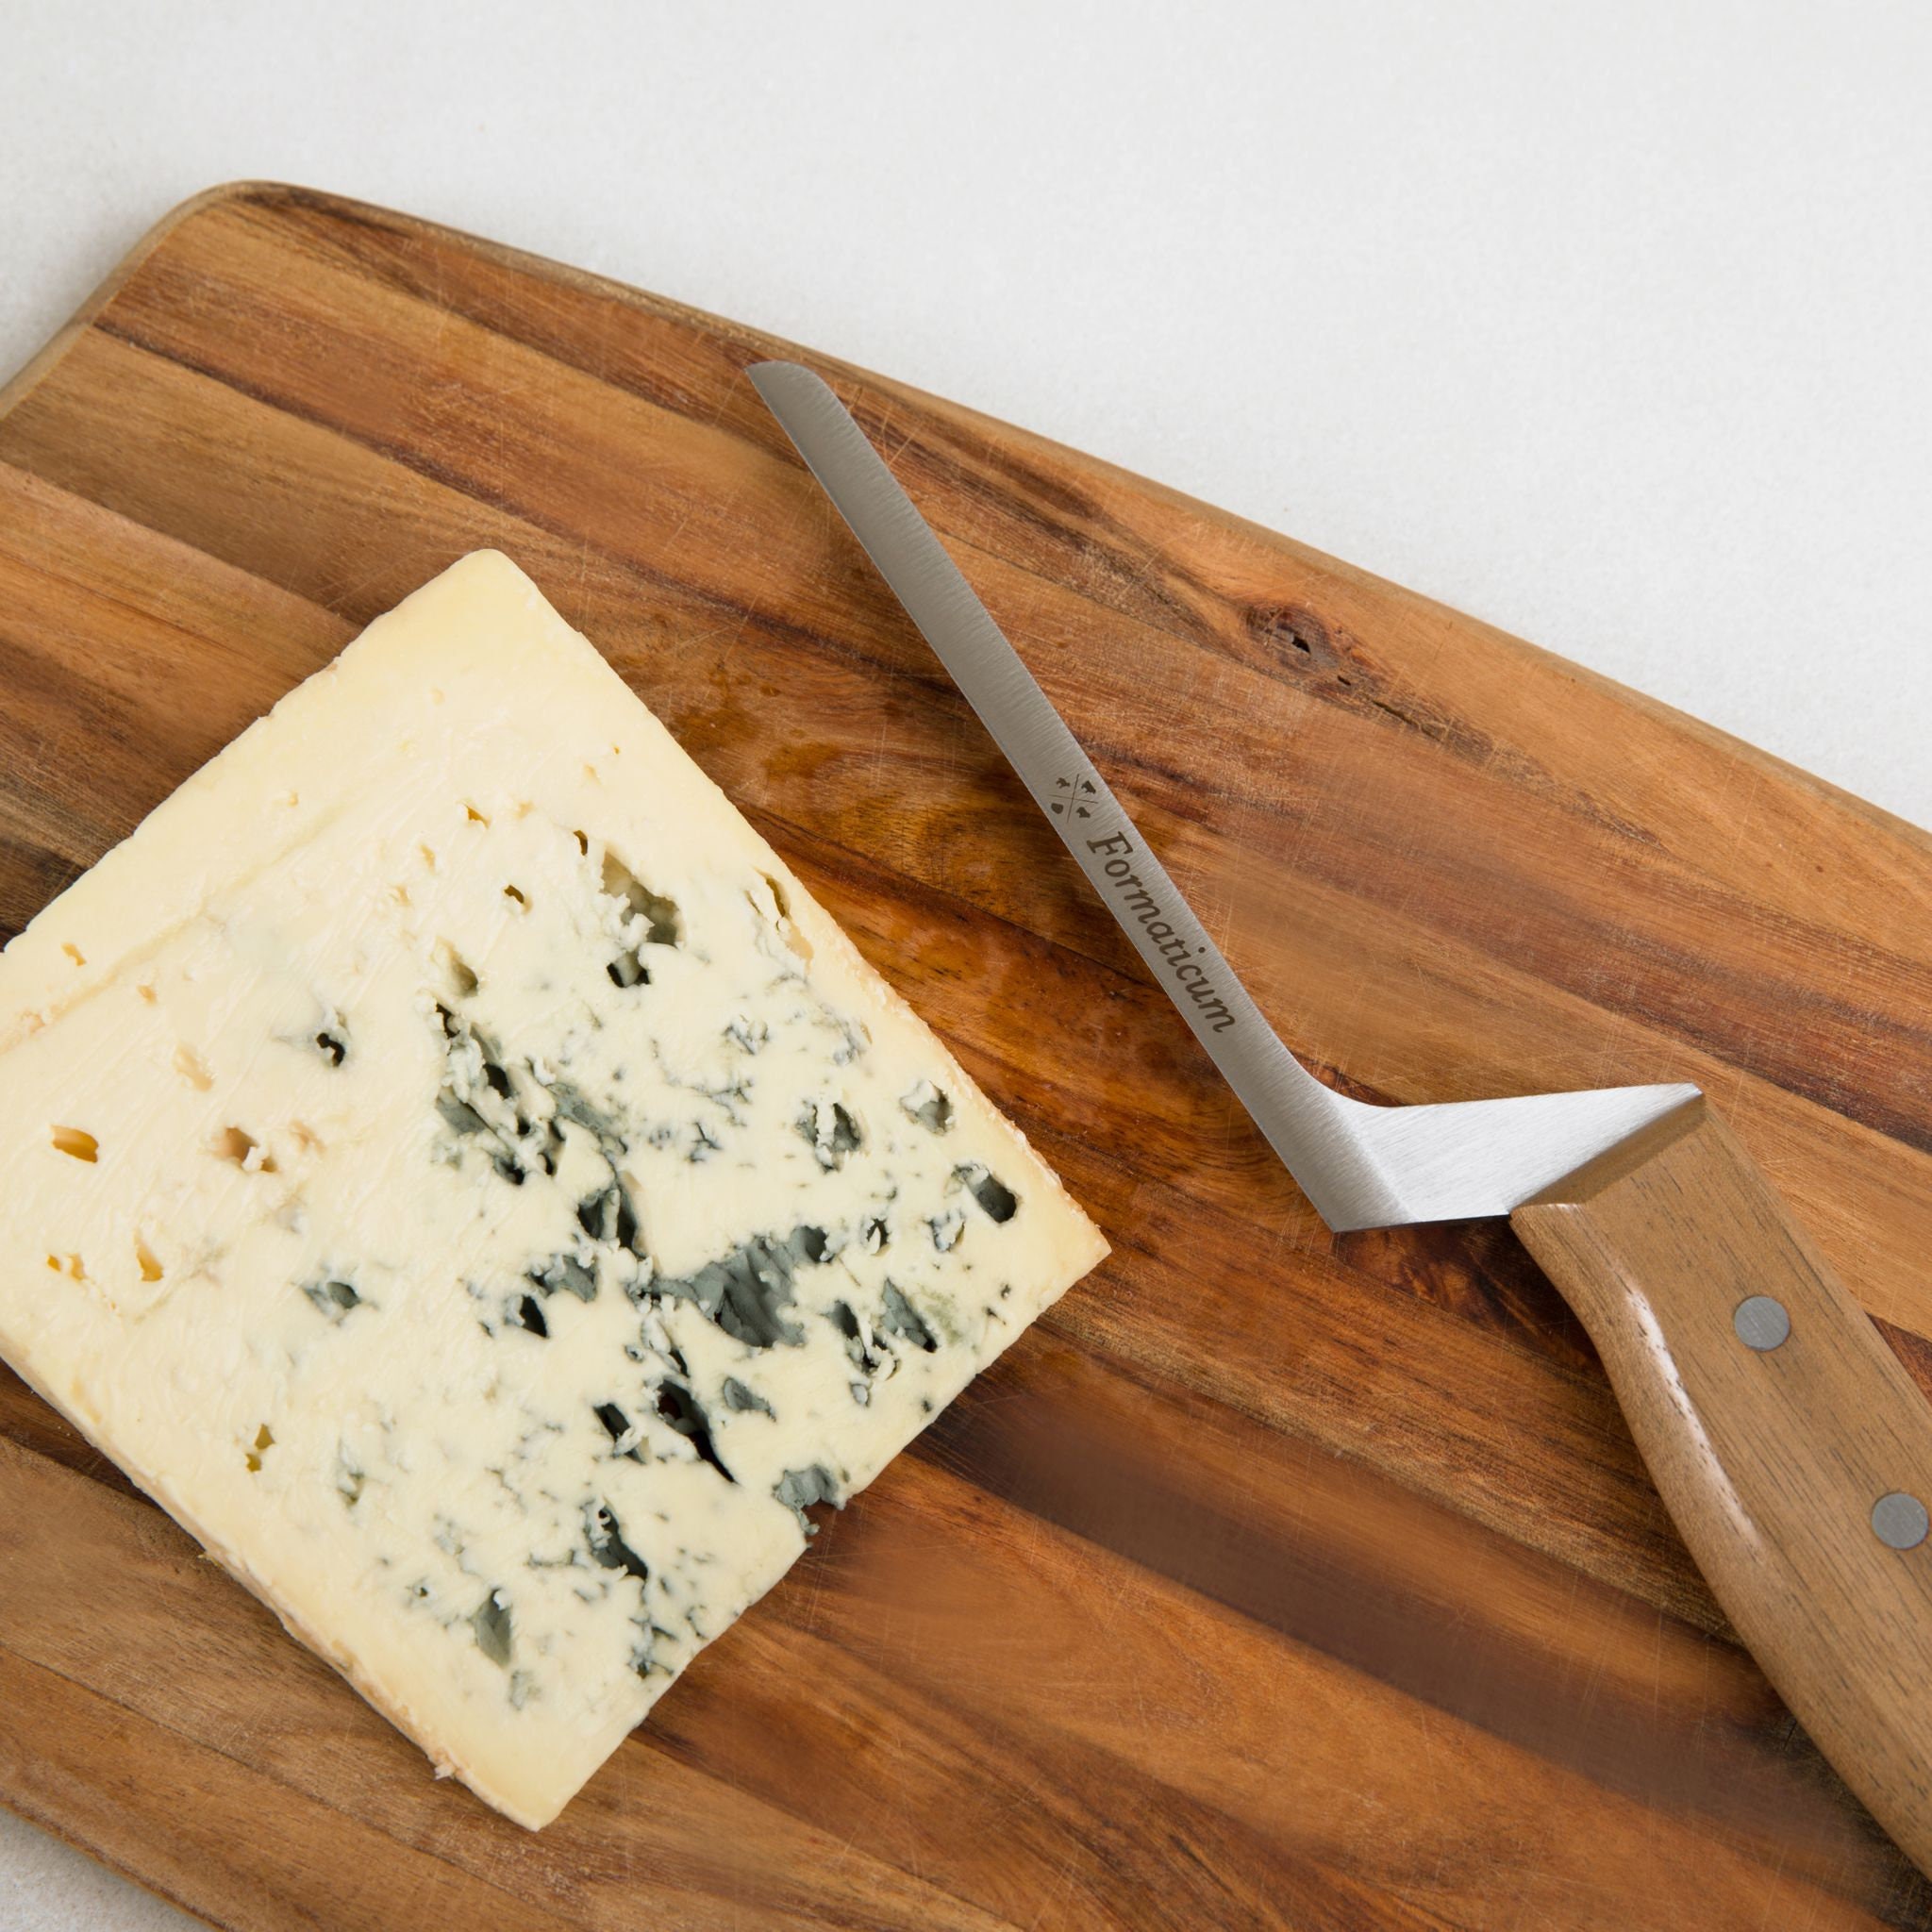 Couteau à fromage de dégustation professionnel – Formaticum